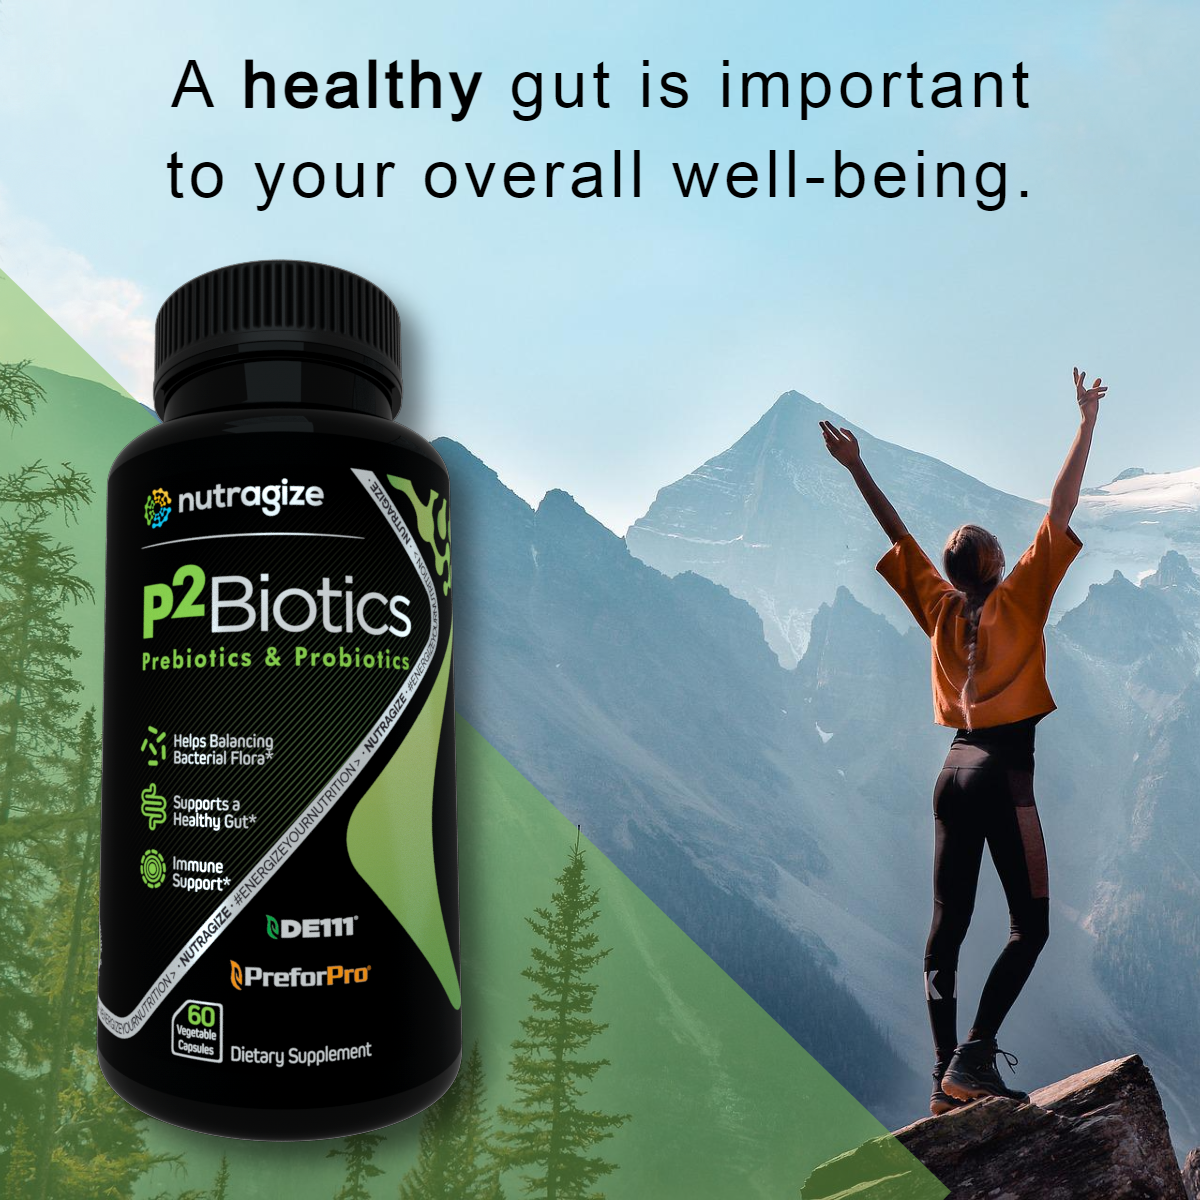 P2Biotics Promotes Gut Health*